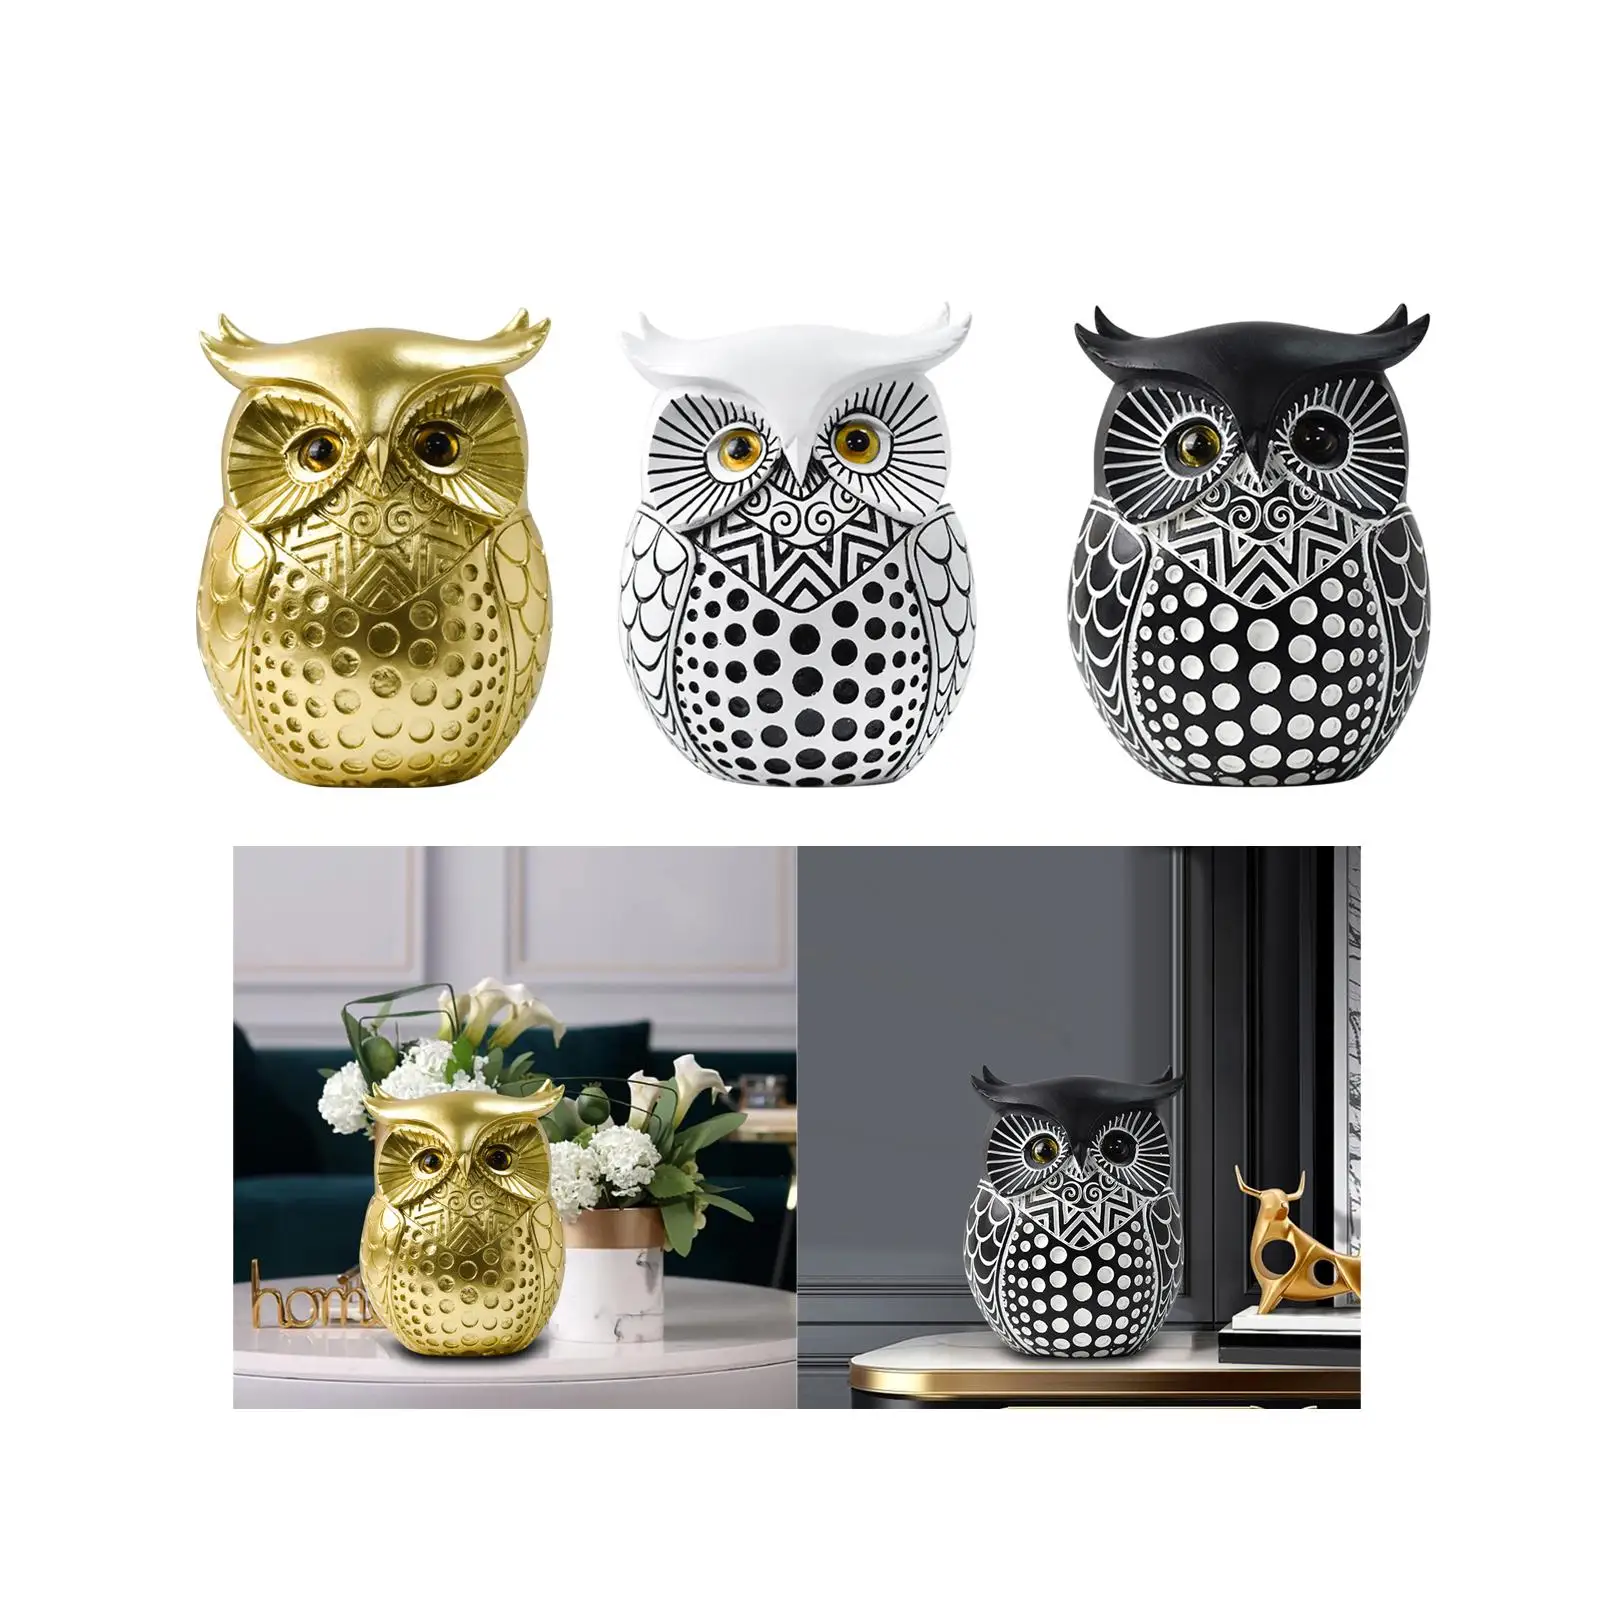 Owl Statue Home Decor Simple Owl Figurine for Office Mantel Desktop